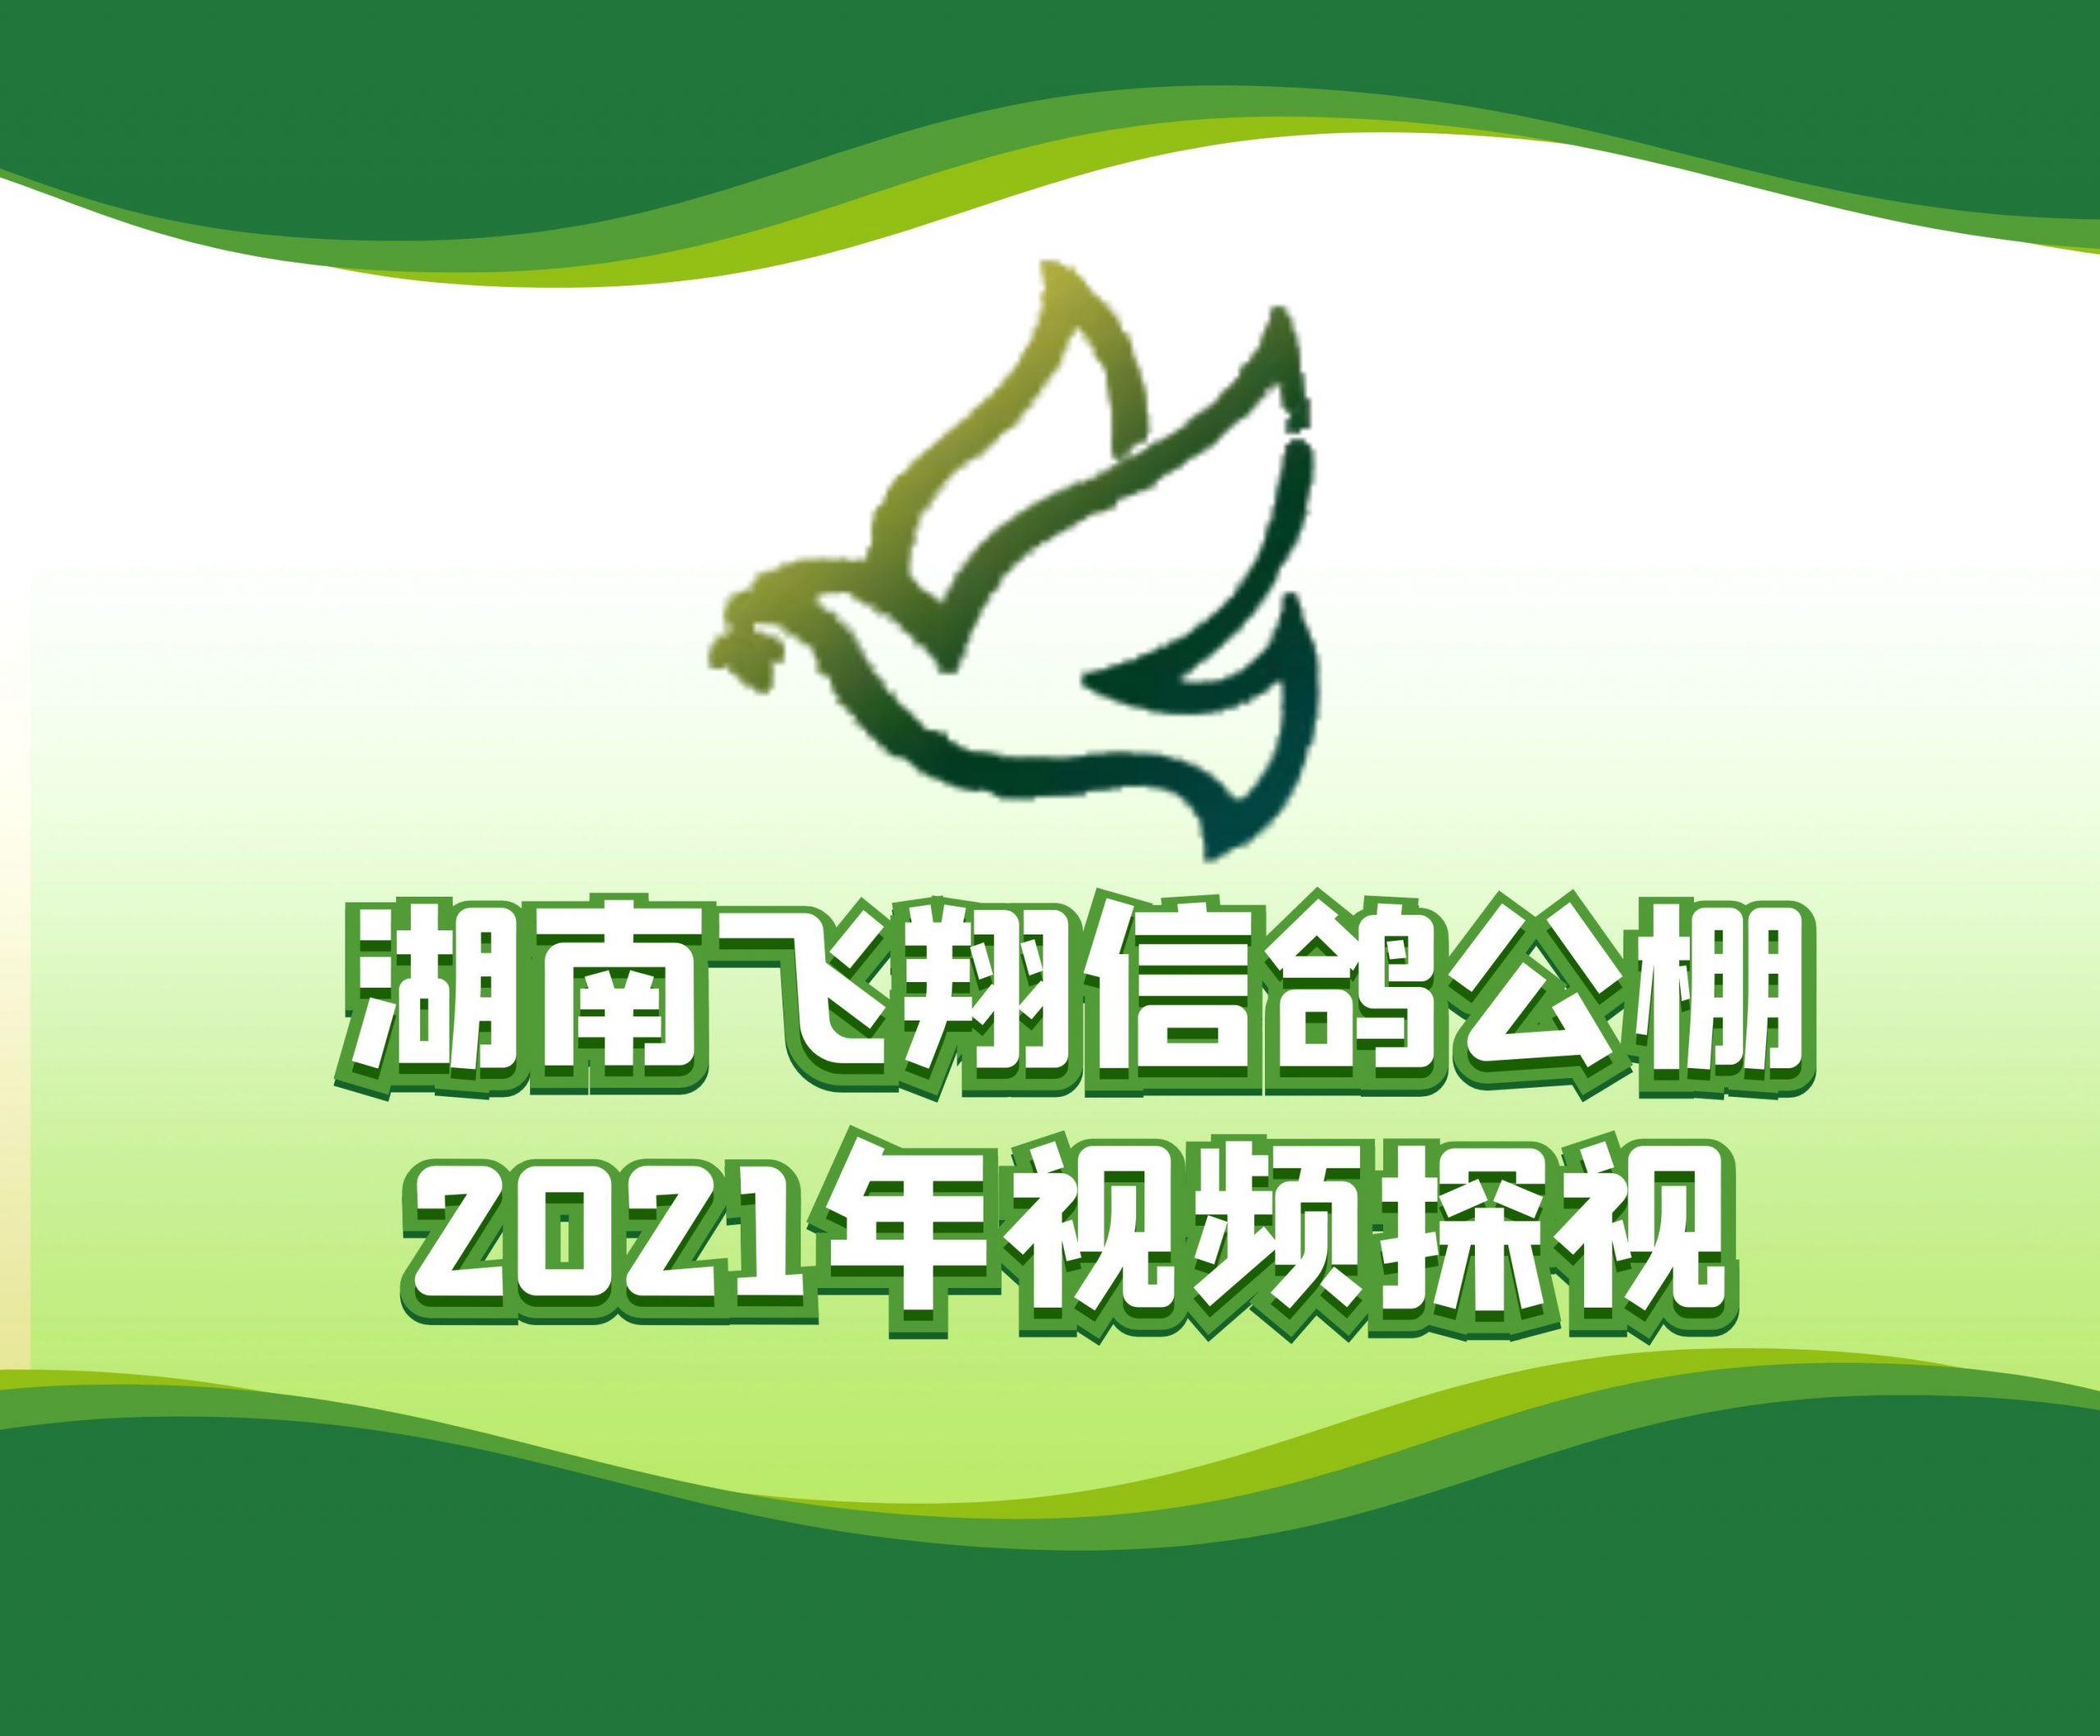 周宁京-2021-32-0674925